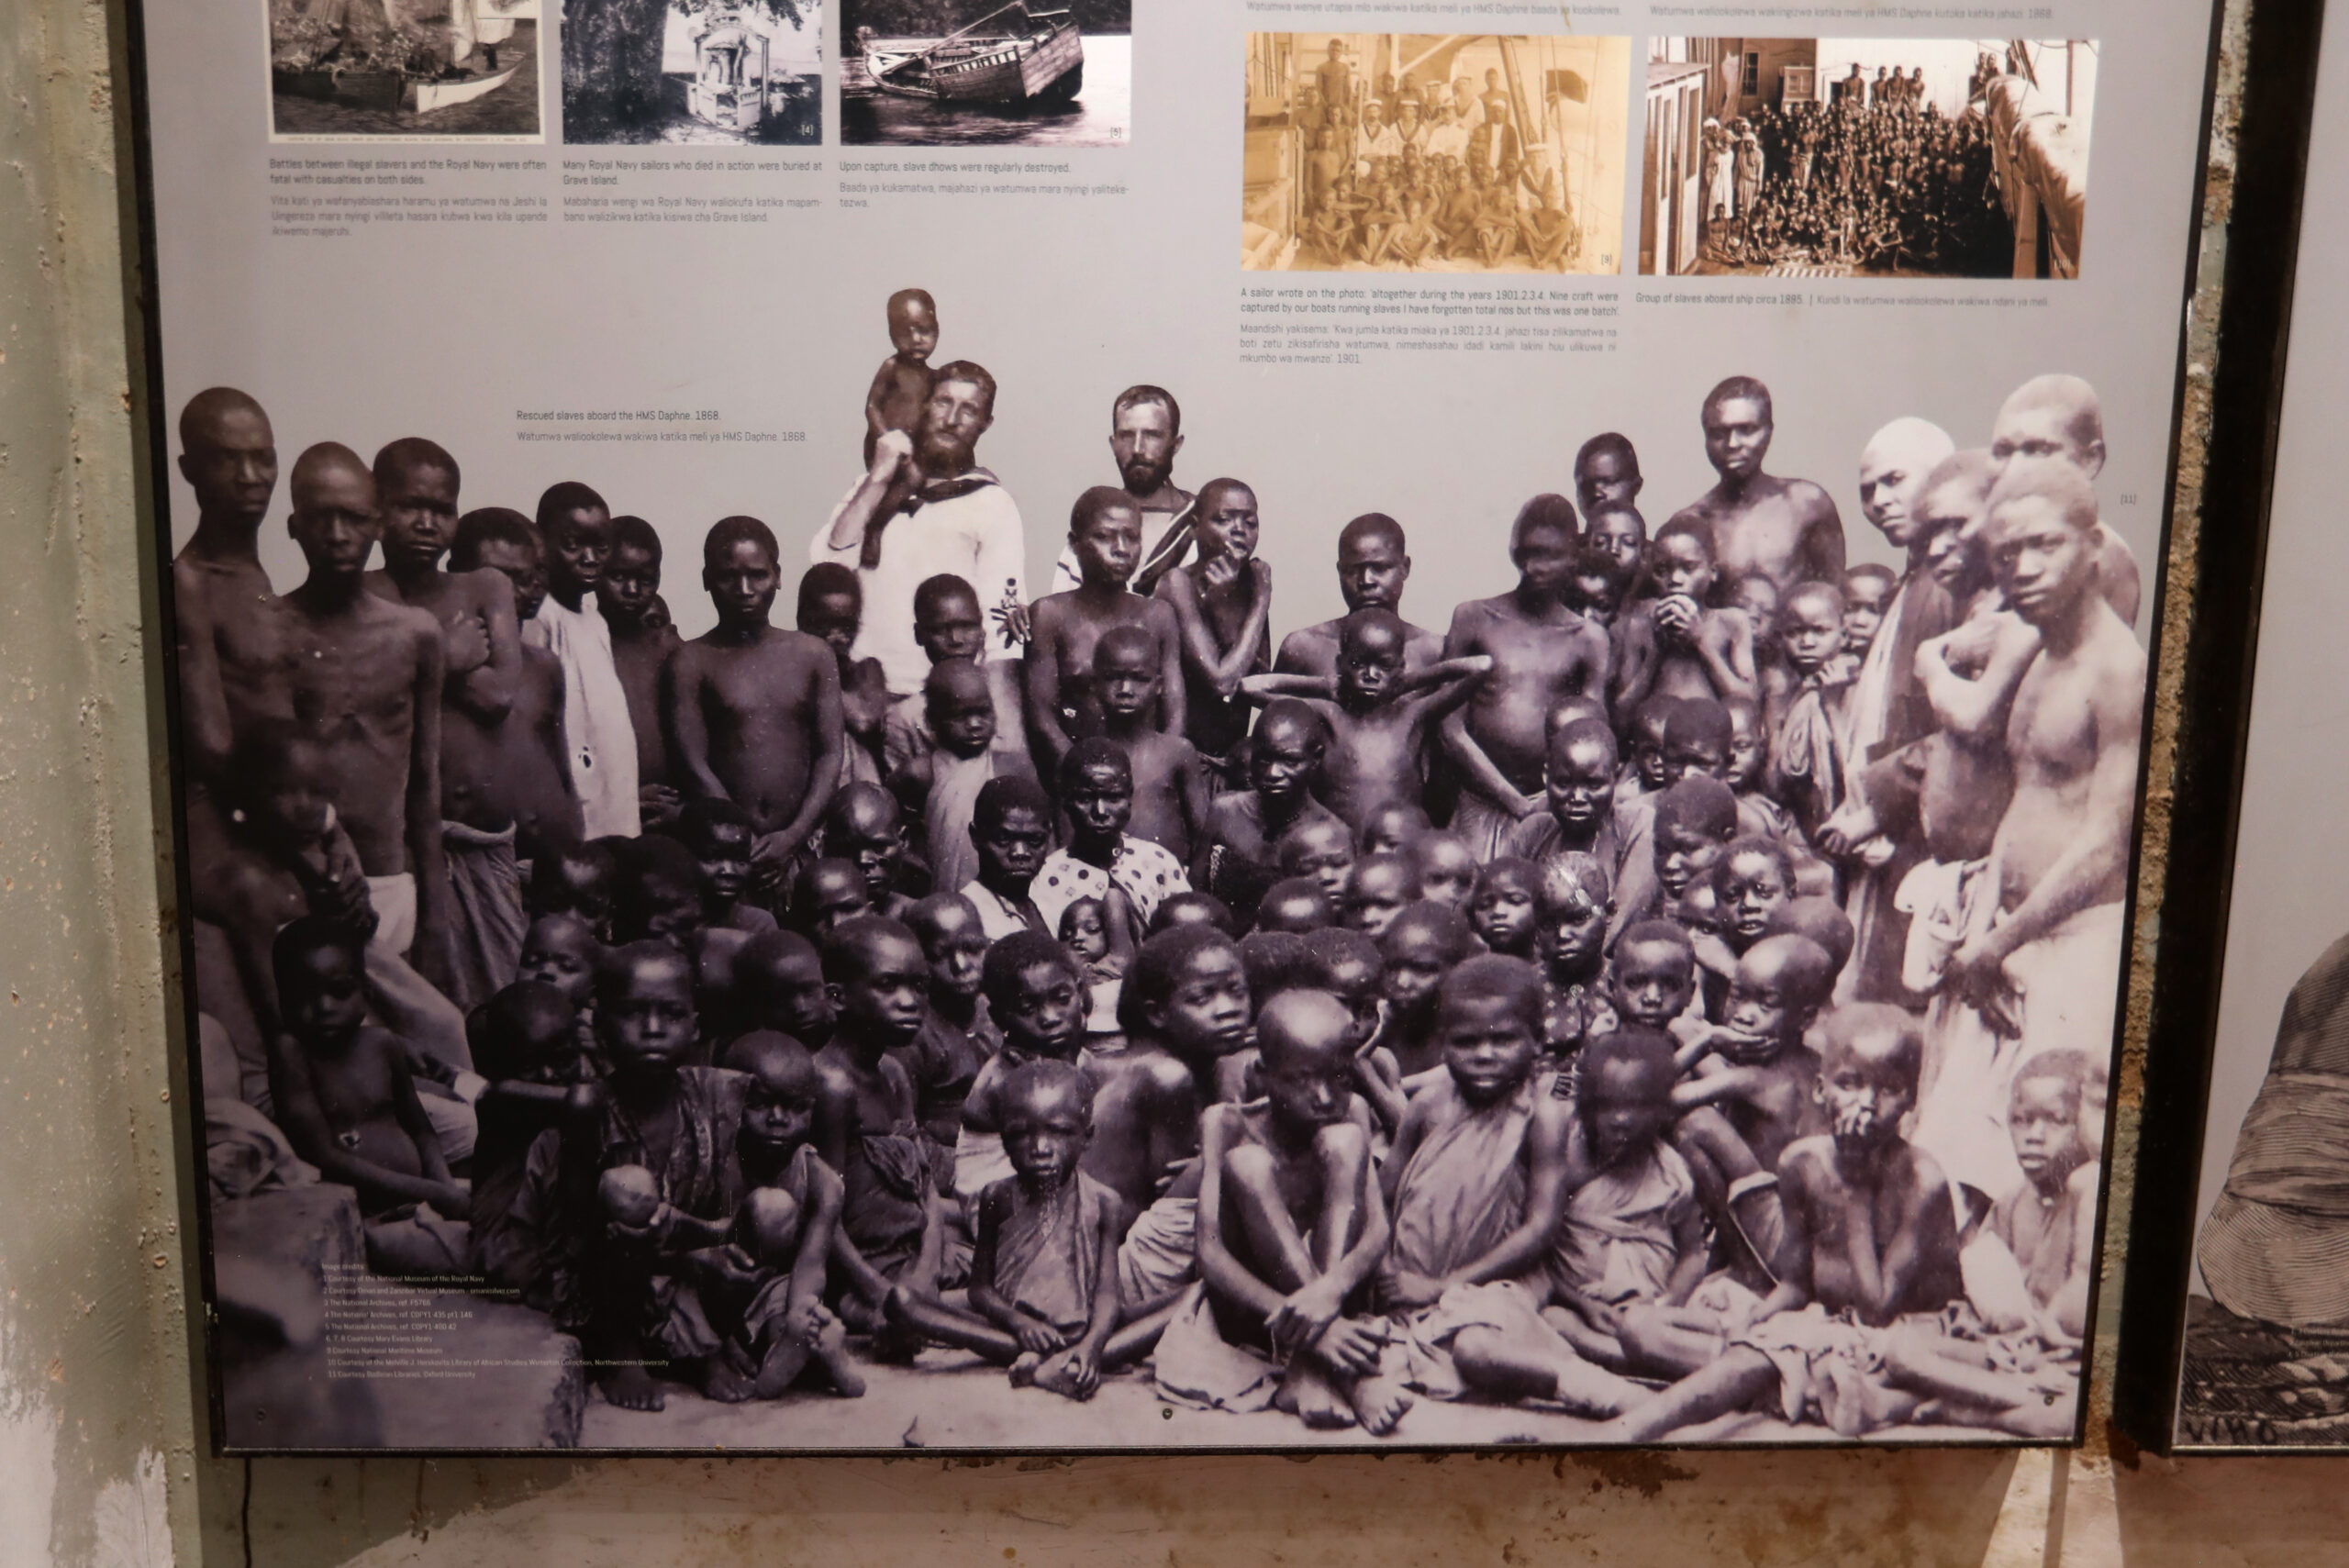 ย้อนรำลึกประวัติศาสตร์ 'การค้าทาส' ณ เกาะแซนซิบาร์